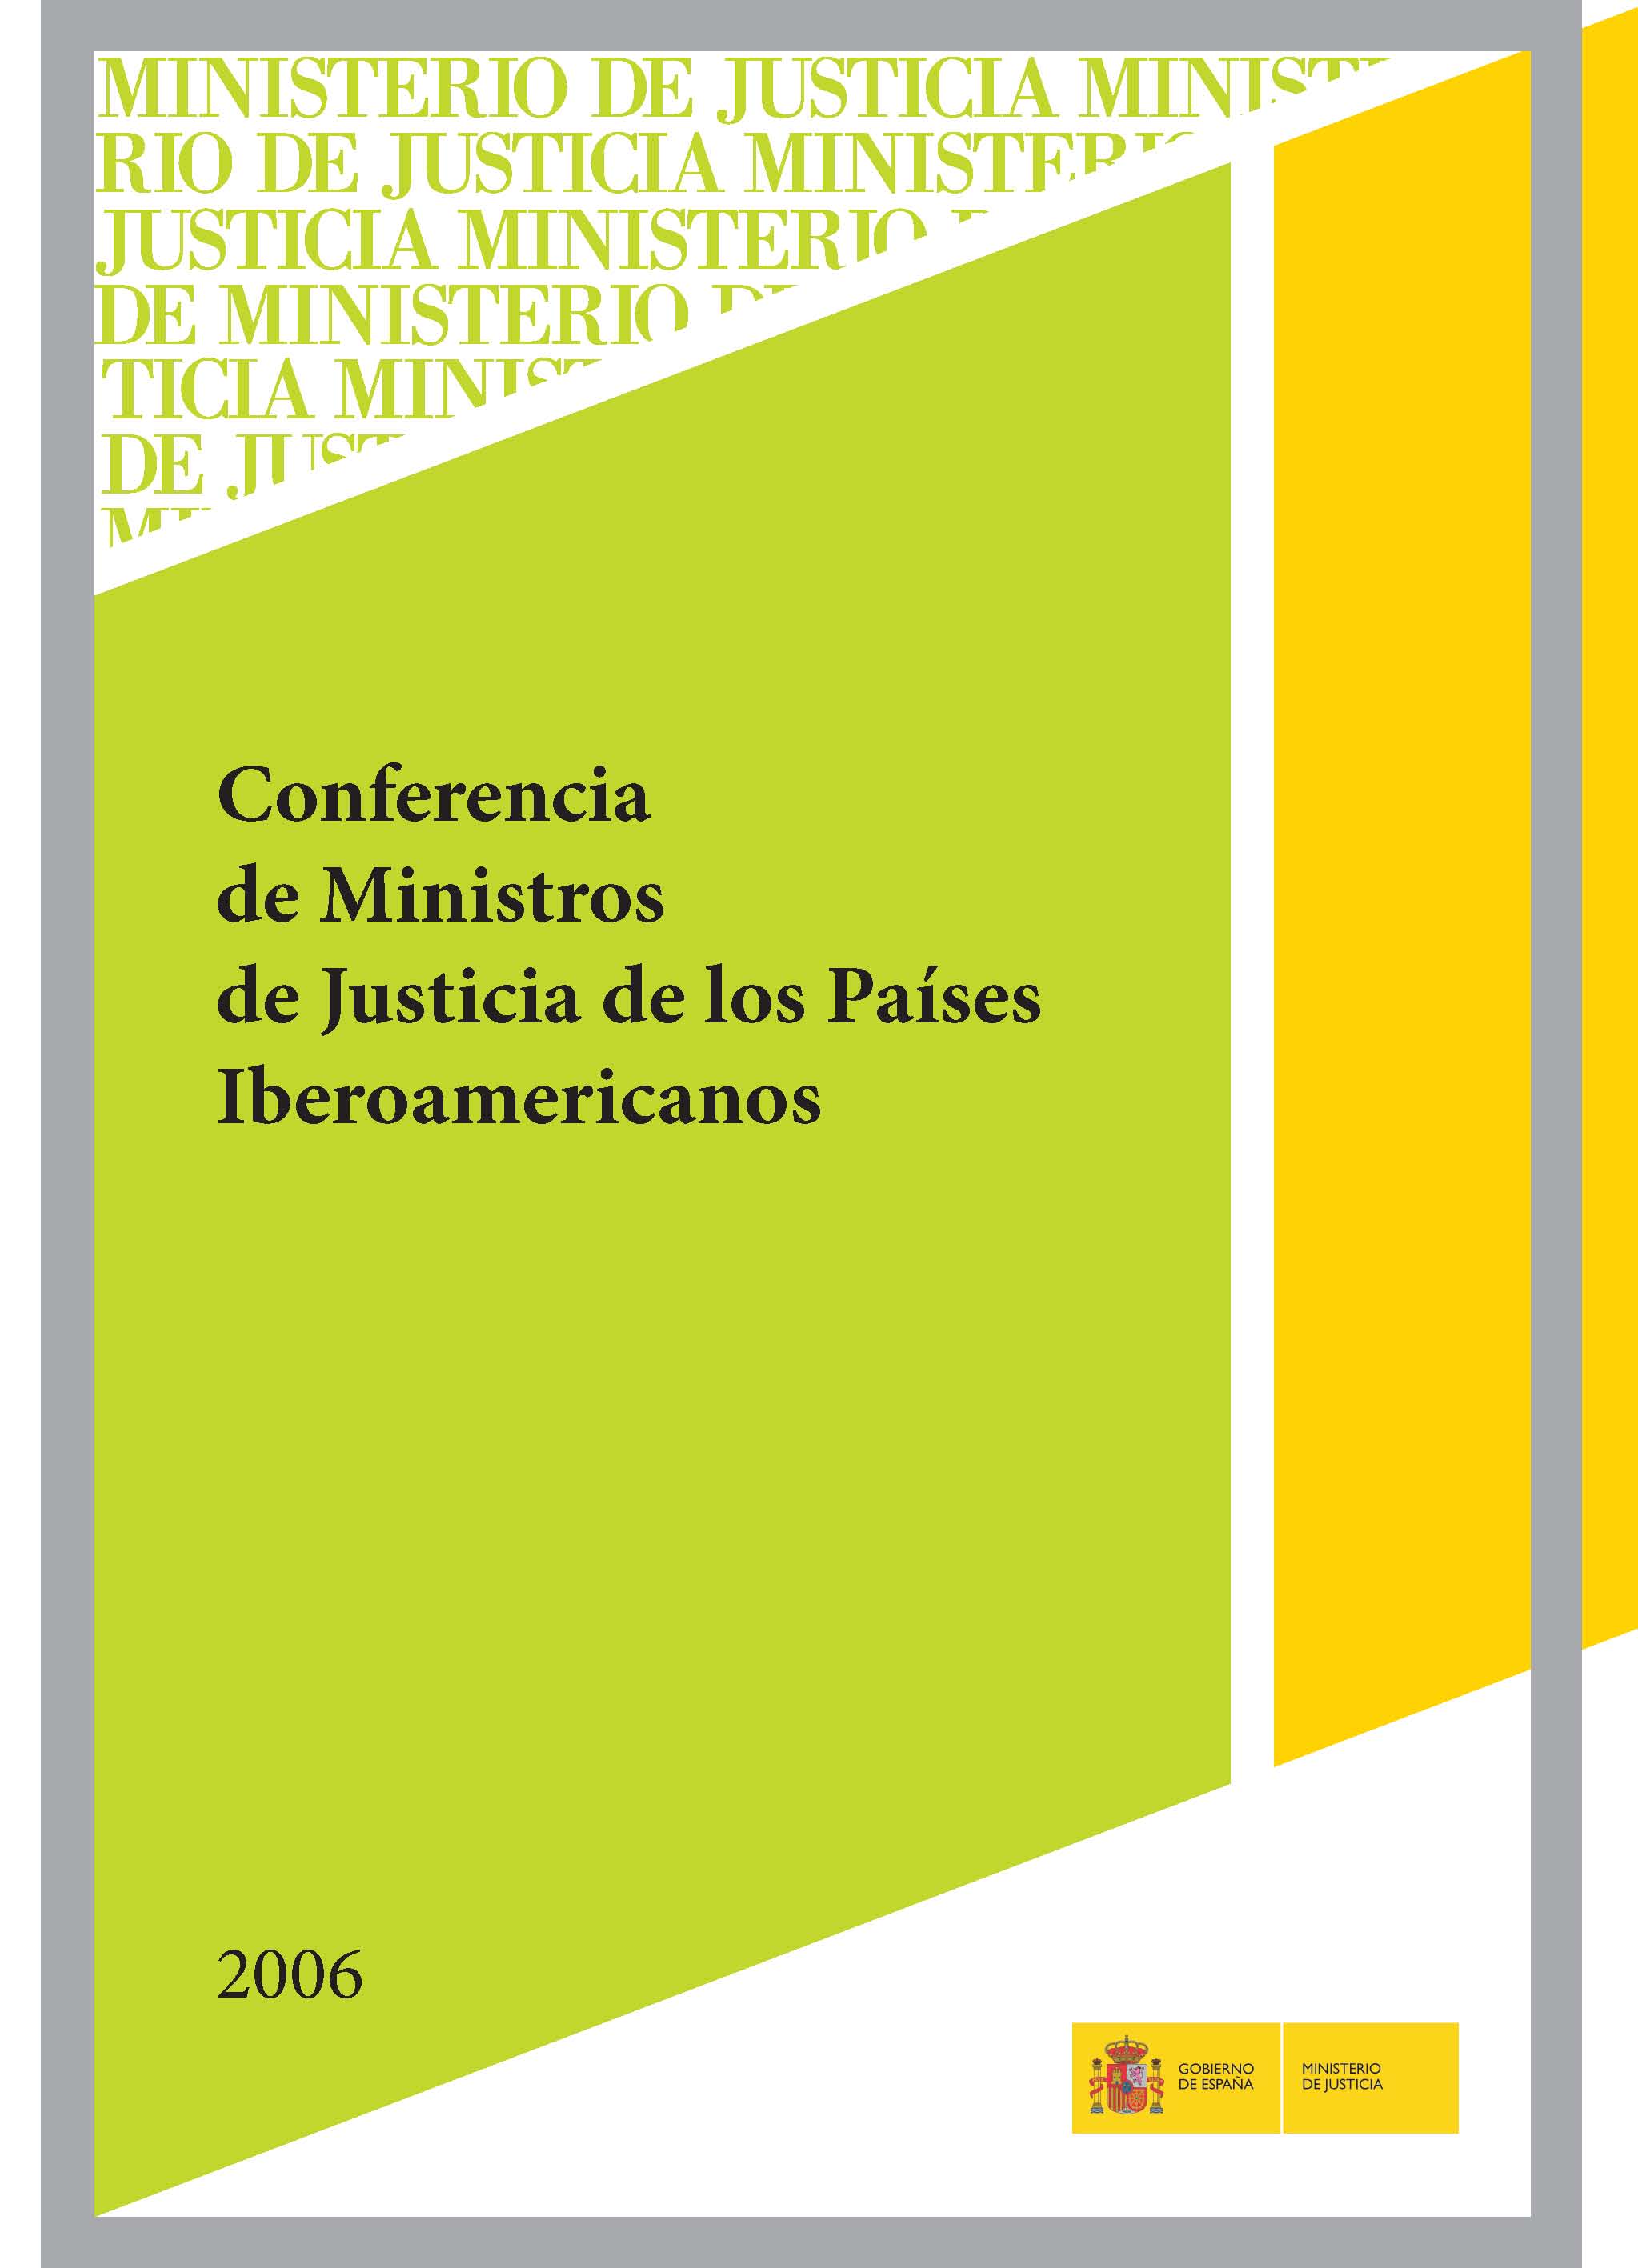 View details of CONFERENCIA DE MINISTROS DE JUSTICIA DE LOS PAÍSES IBEROAMERICANOS